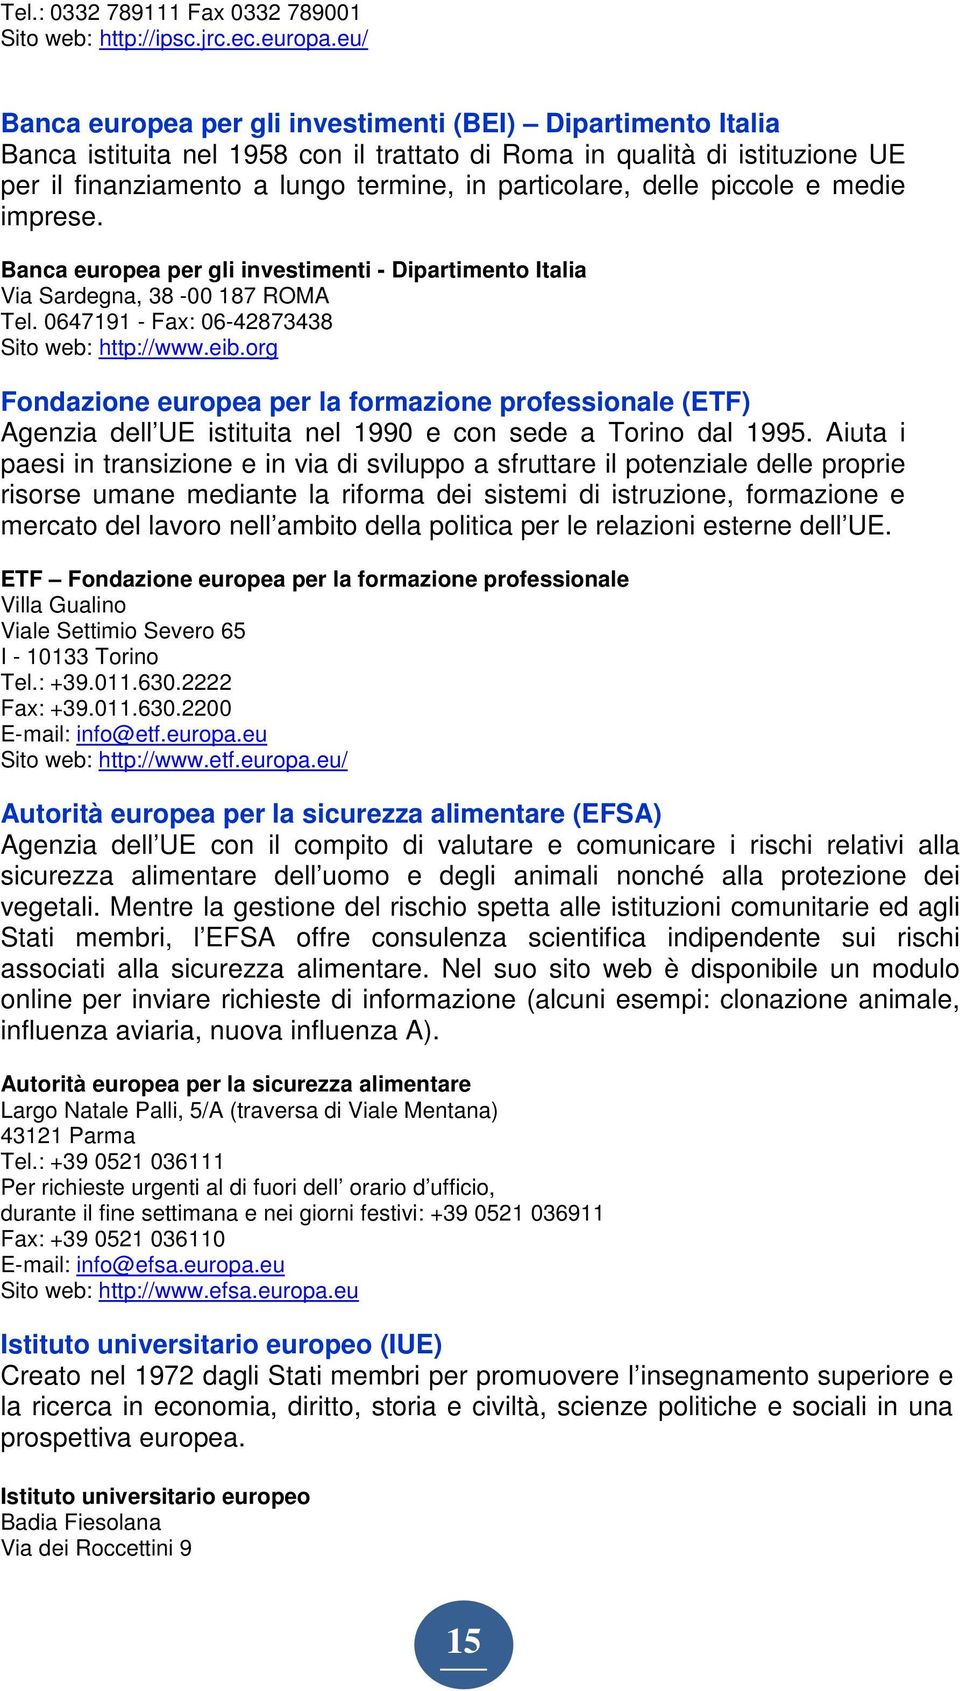 delle piccole e medie imprese. Banca europea per gli investimenti - Dipartimento Italia Via Sardegna, 38-00 187 ROMA Tel. 0647191 - Fax: 06-42873438 Sito web: http://www.eib.